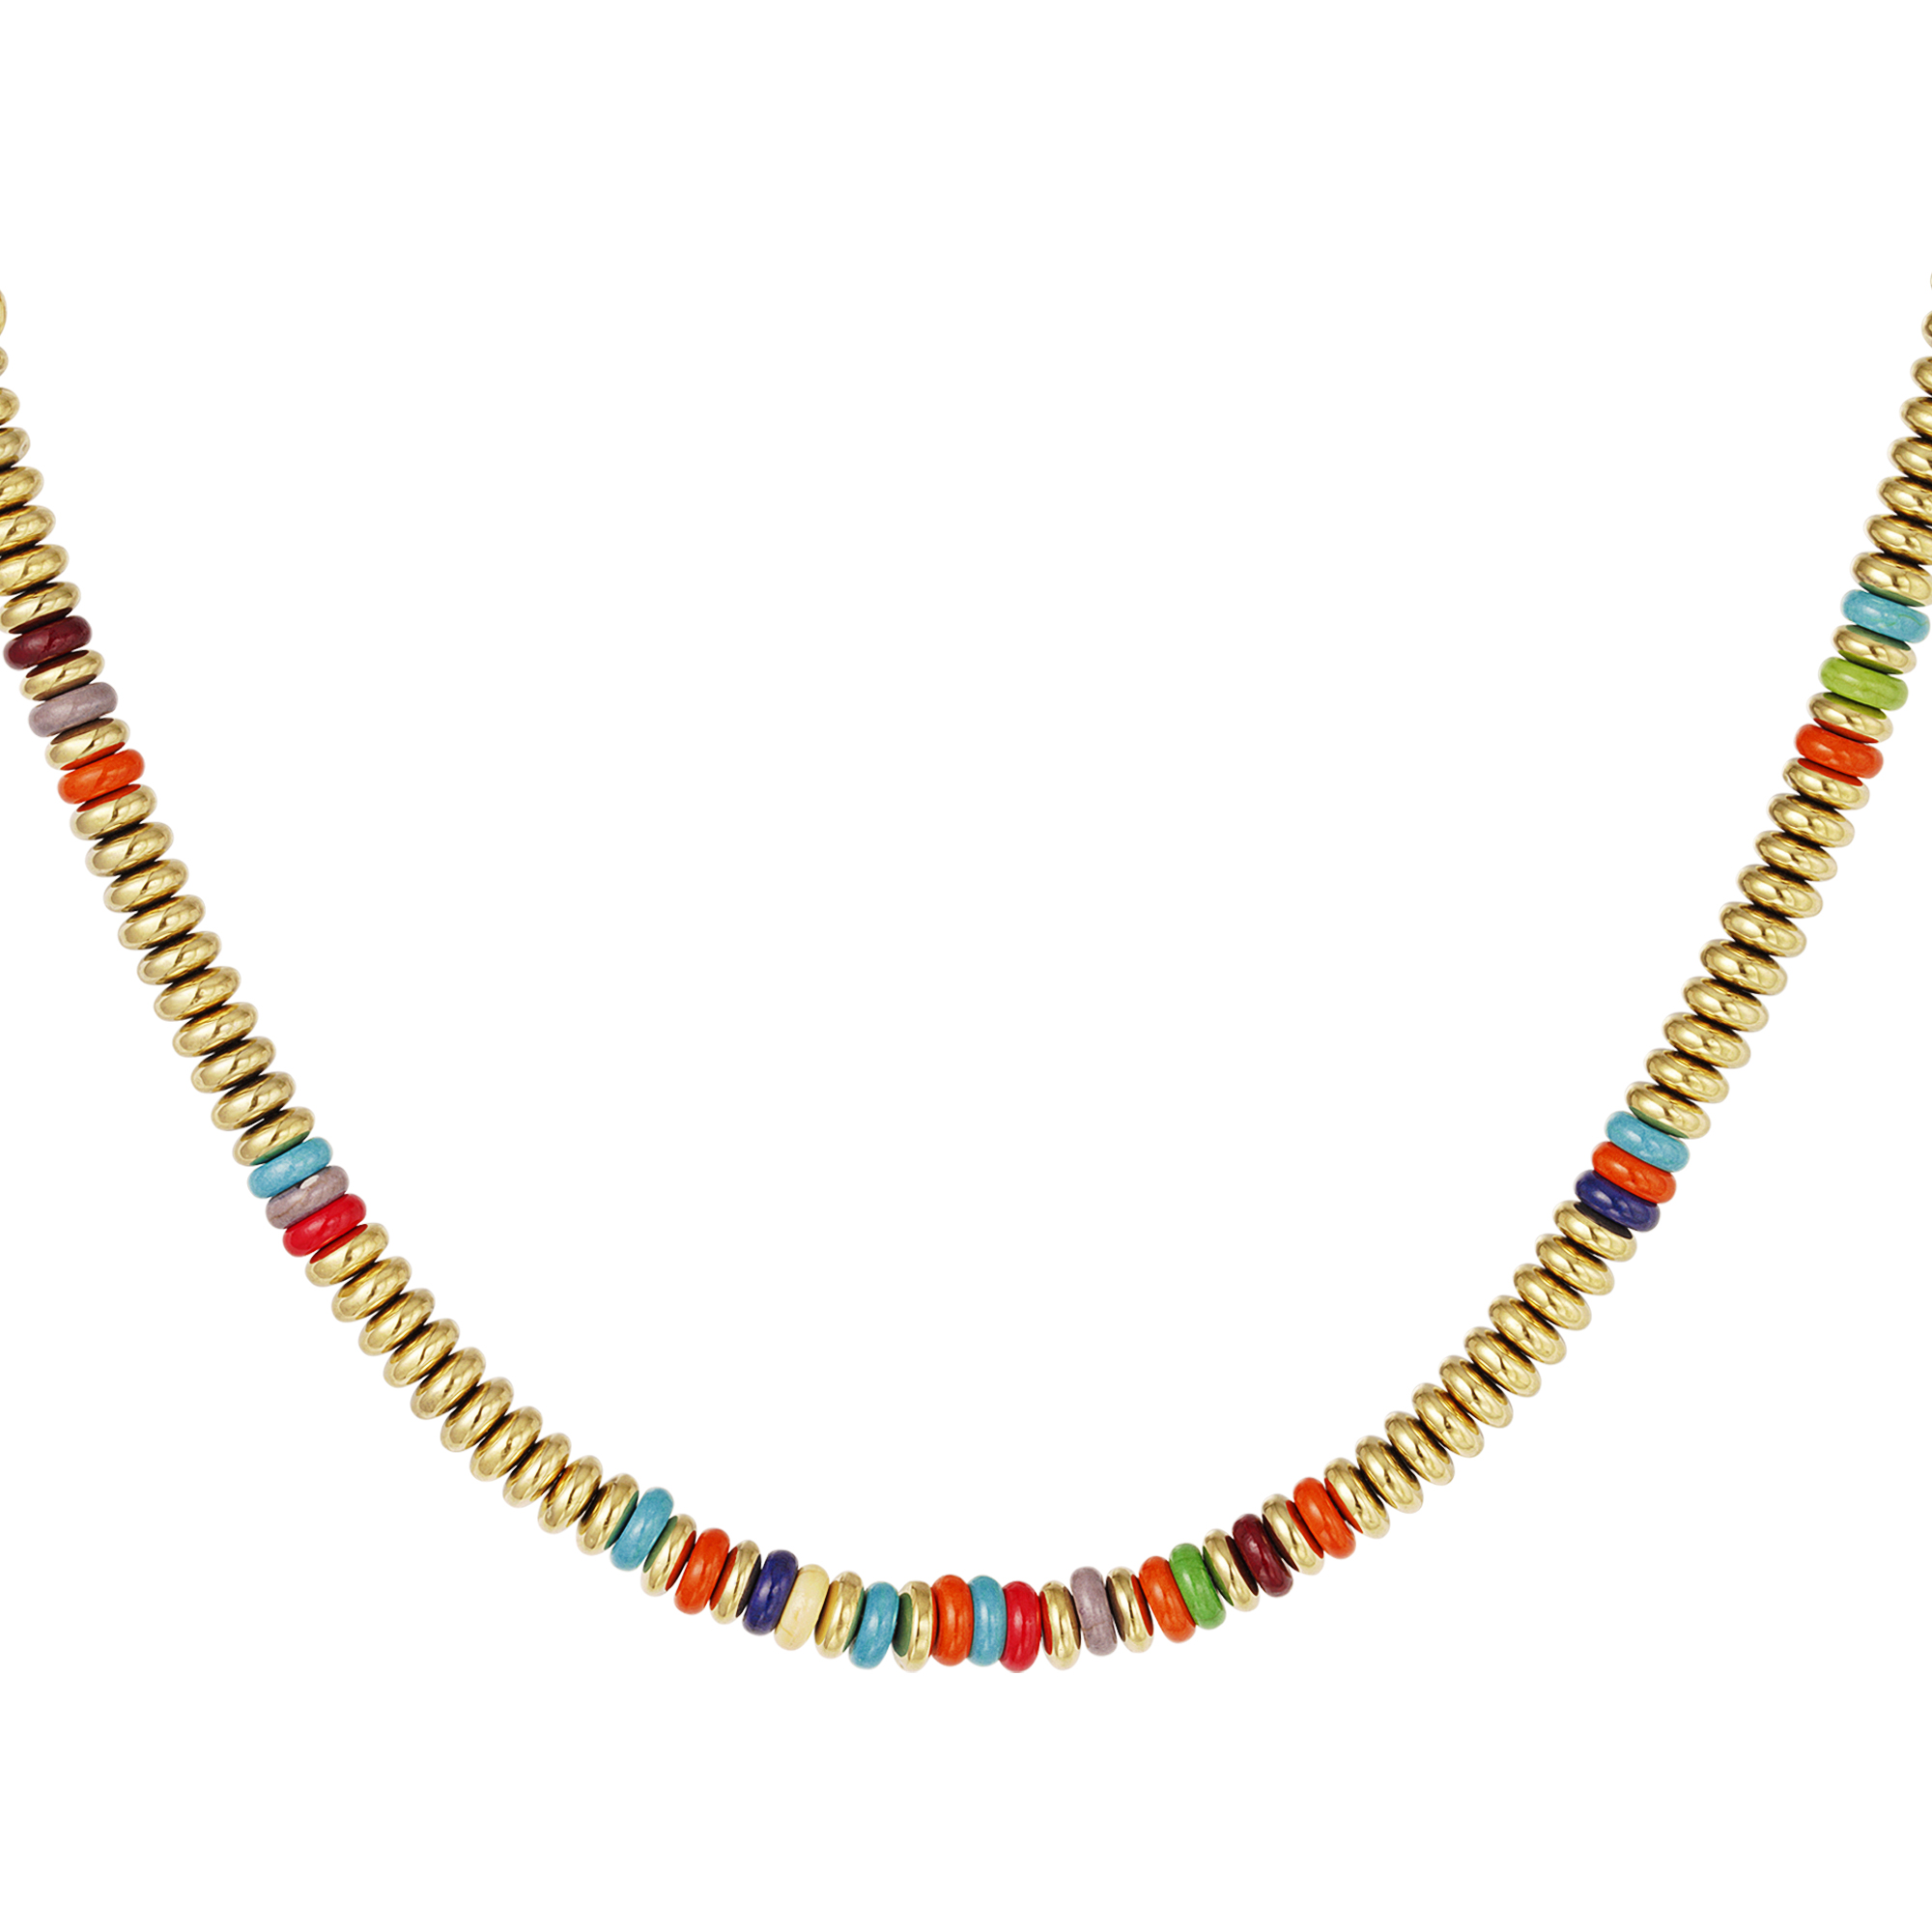 Halskette mit flachen perlen - gold